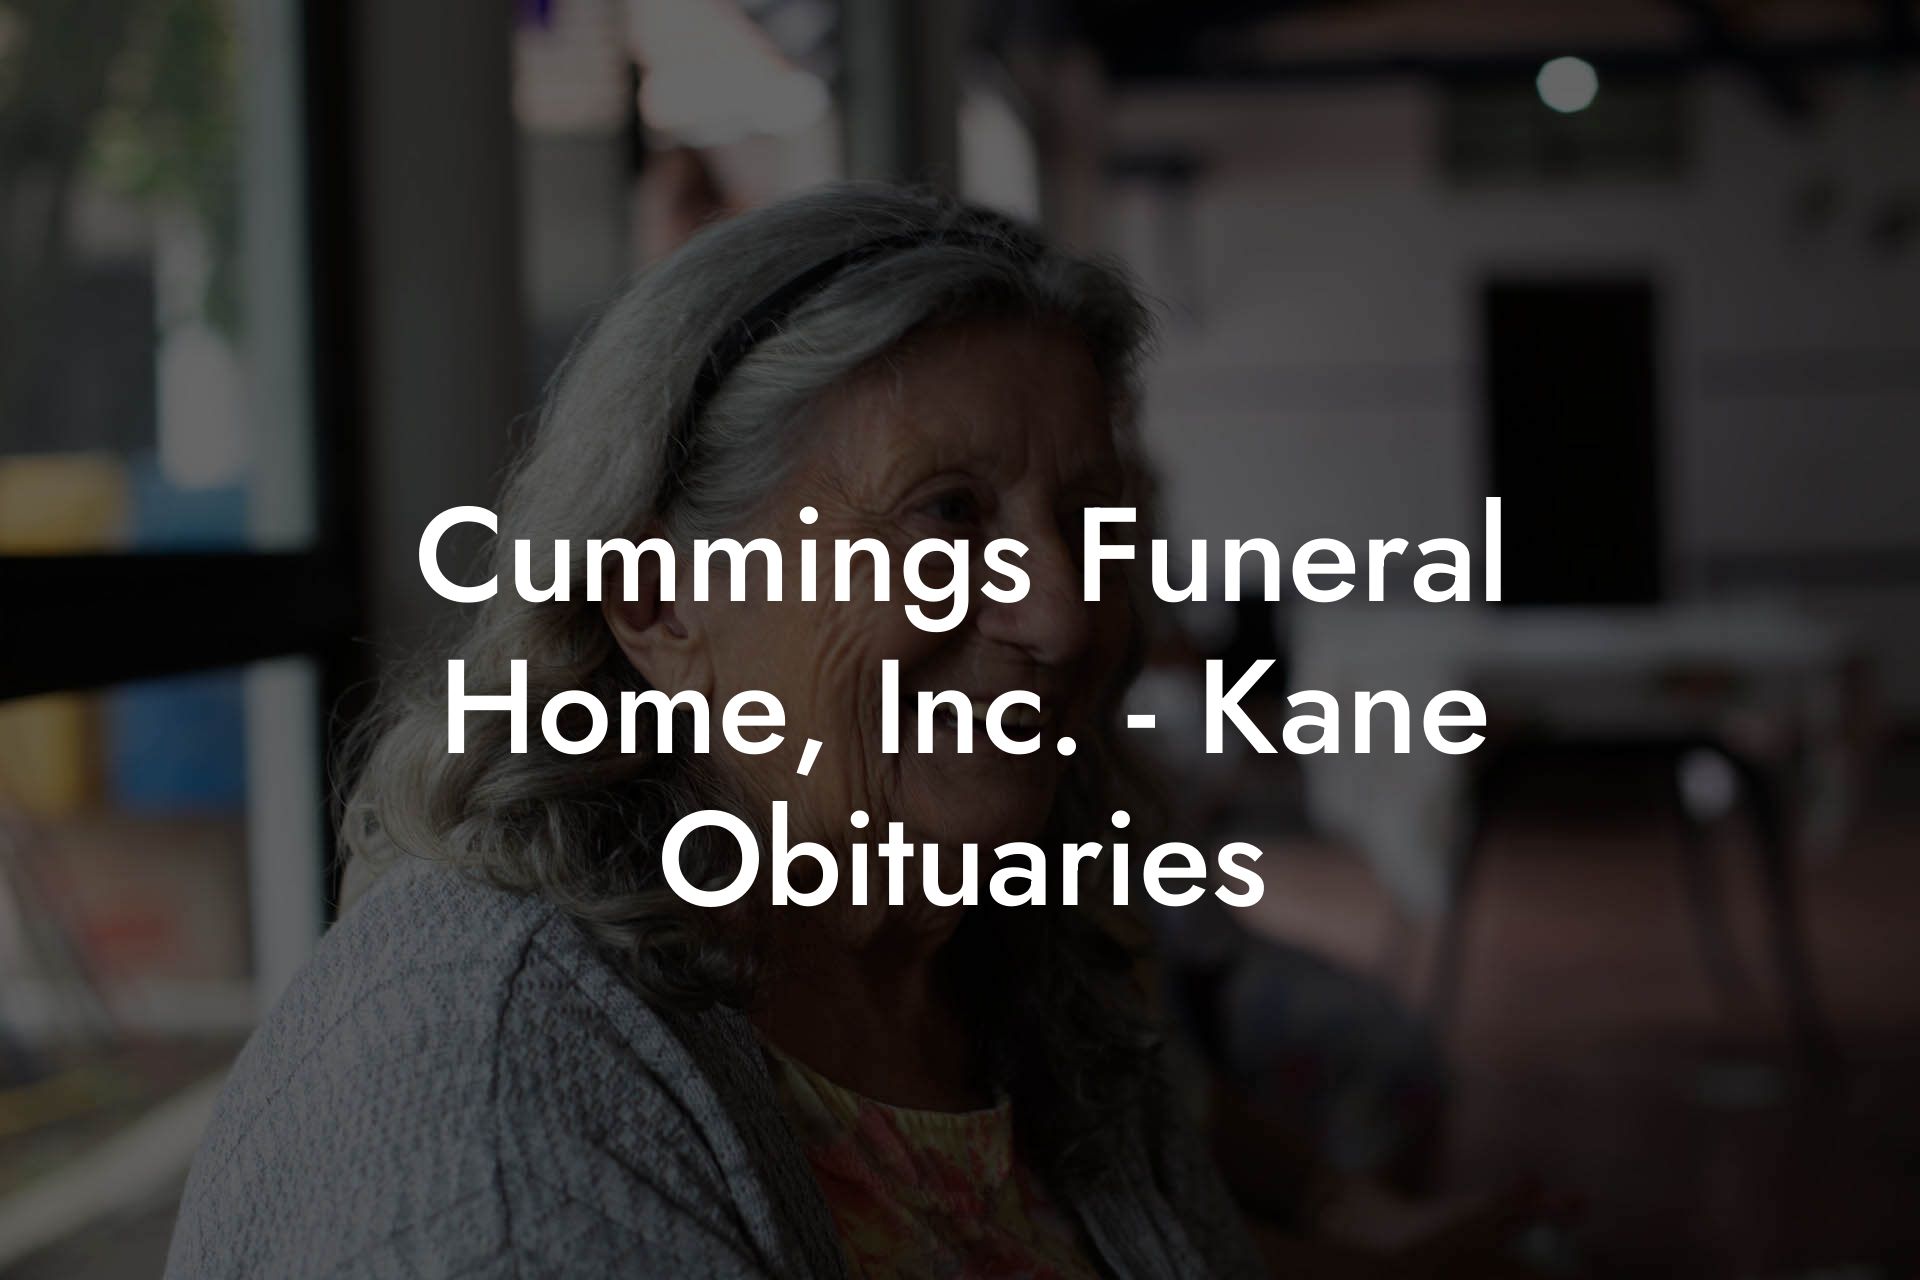 Cummings Funeral Home, Inc. - Kane Obituaries